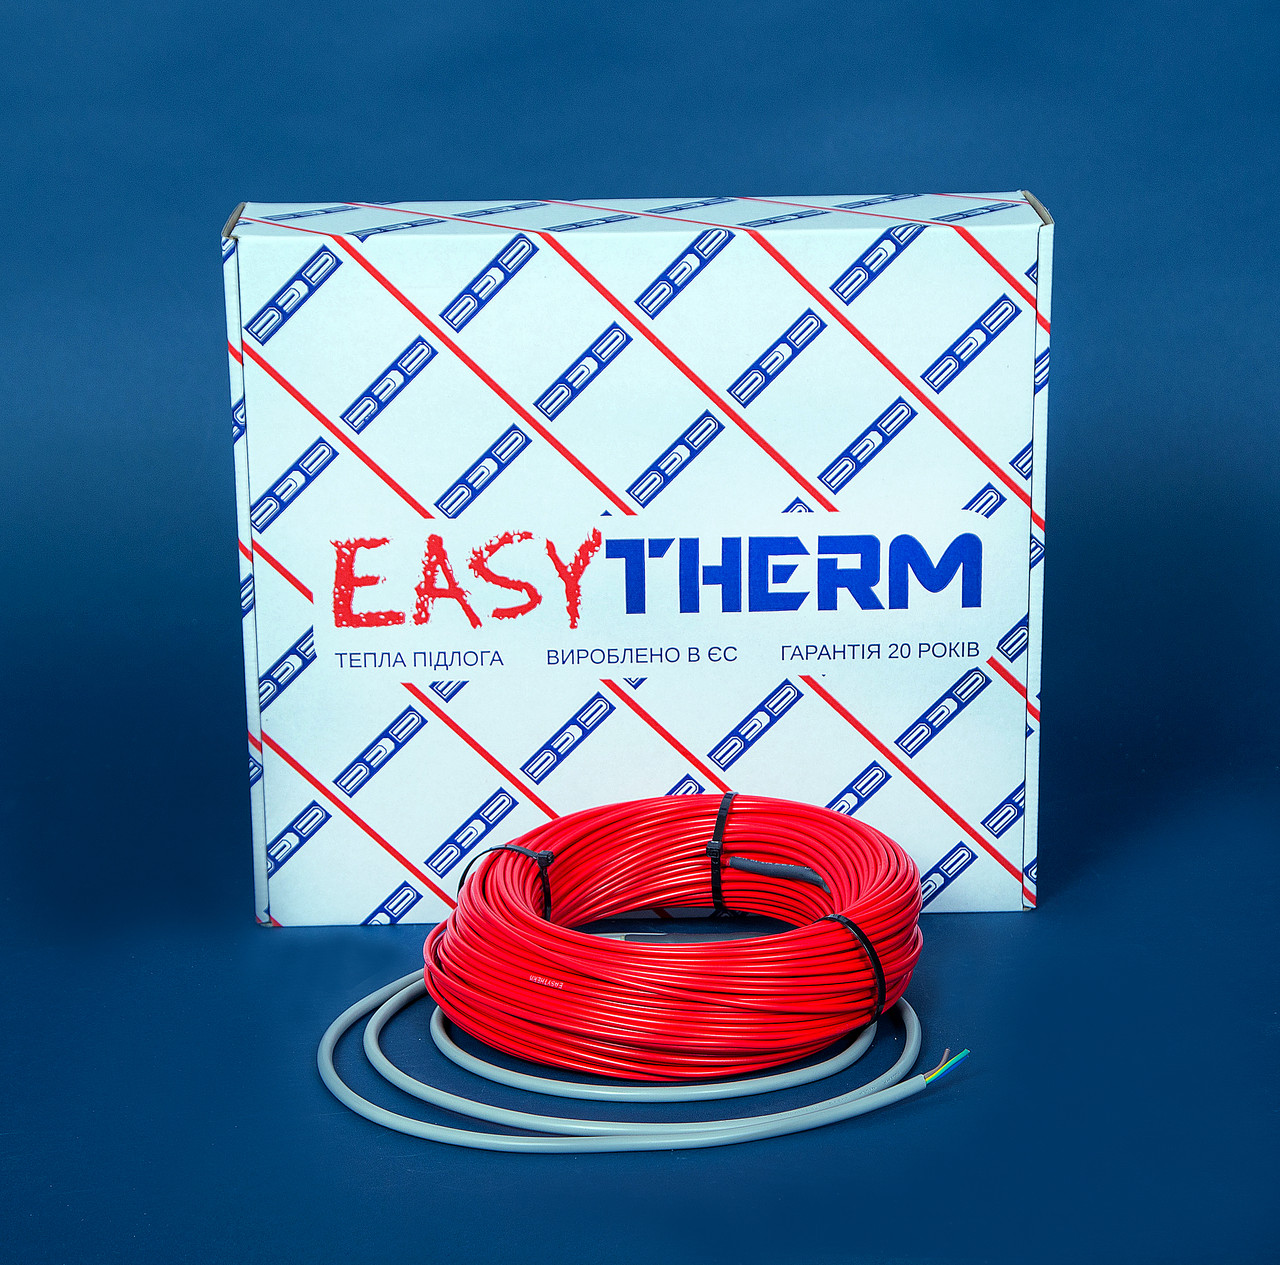 Электрический теплый пол EasyTherm Easycable 135.0 отзывы - изображения 5